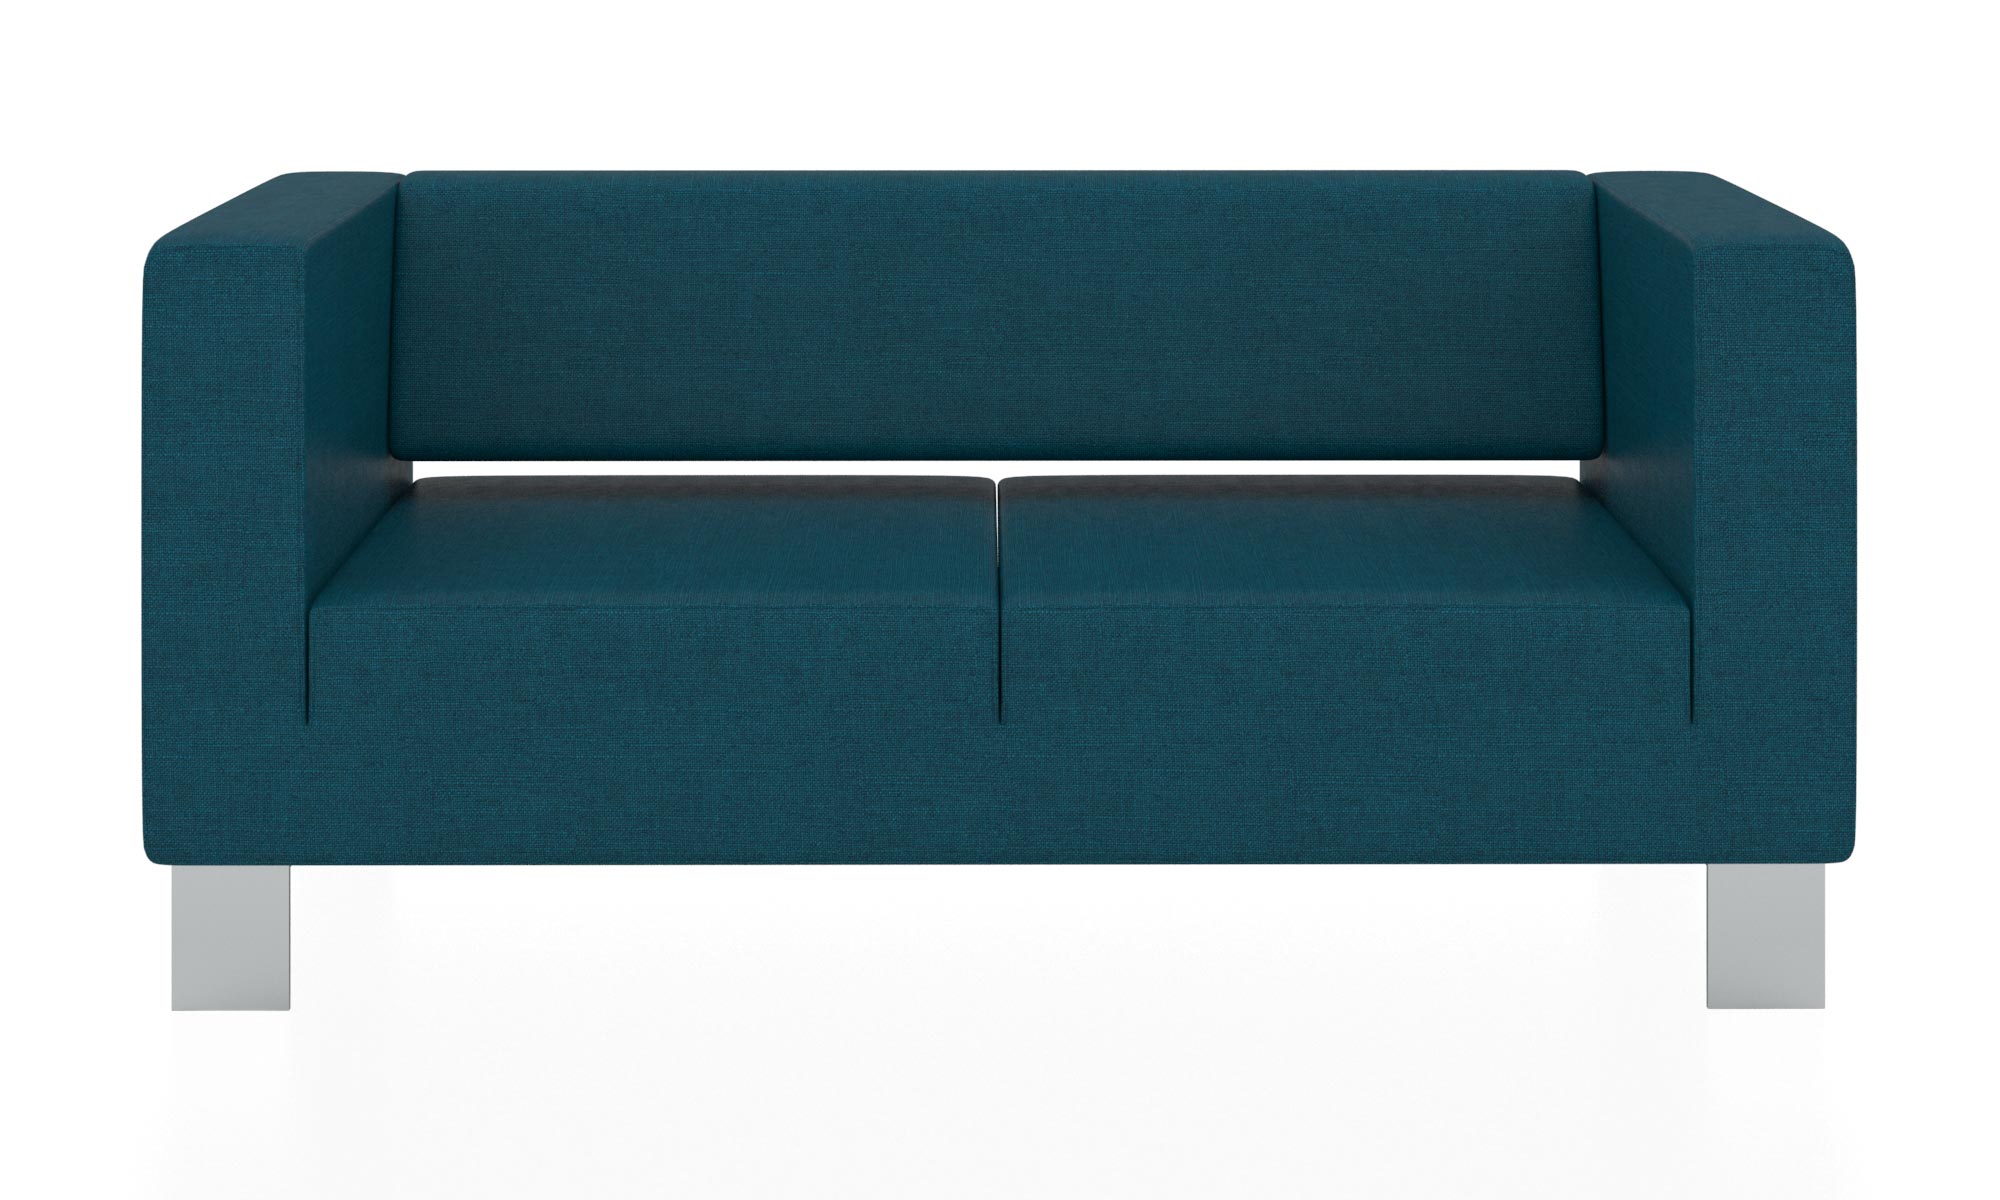 Современный двухместный диван с обивкой из ткани. Цвет синий (flash 11).